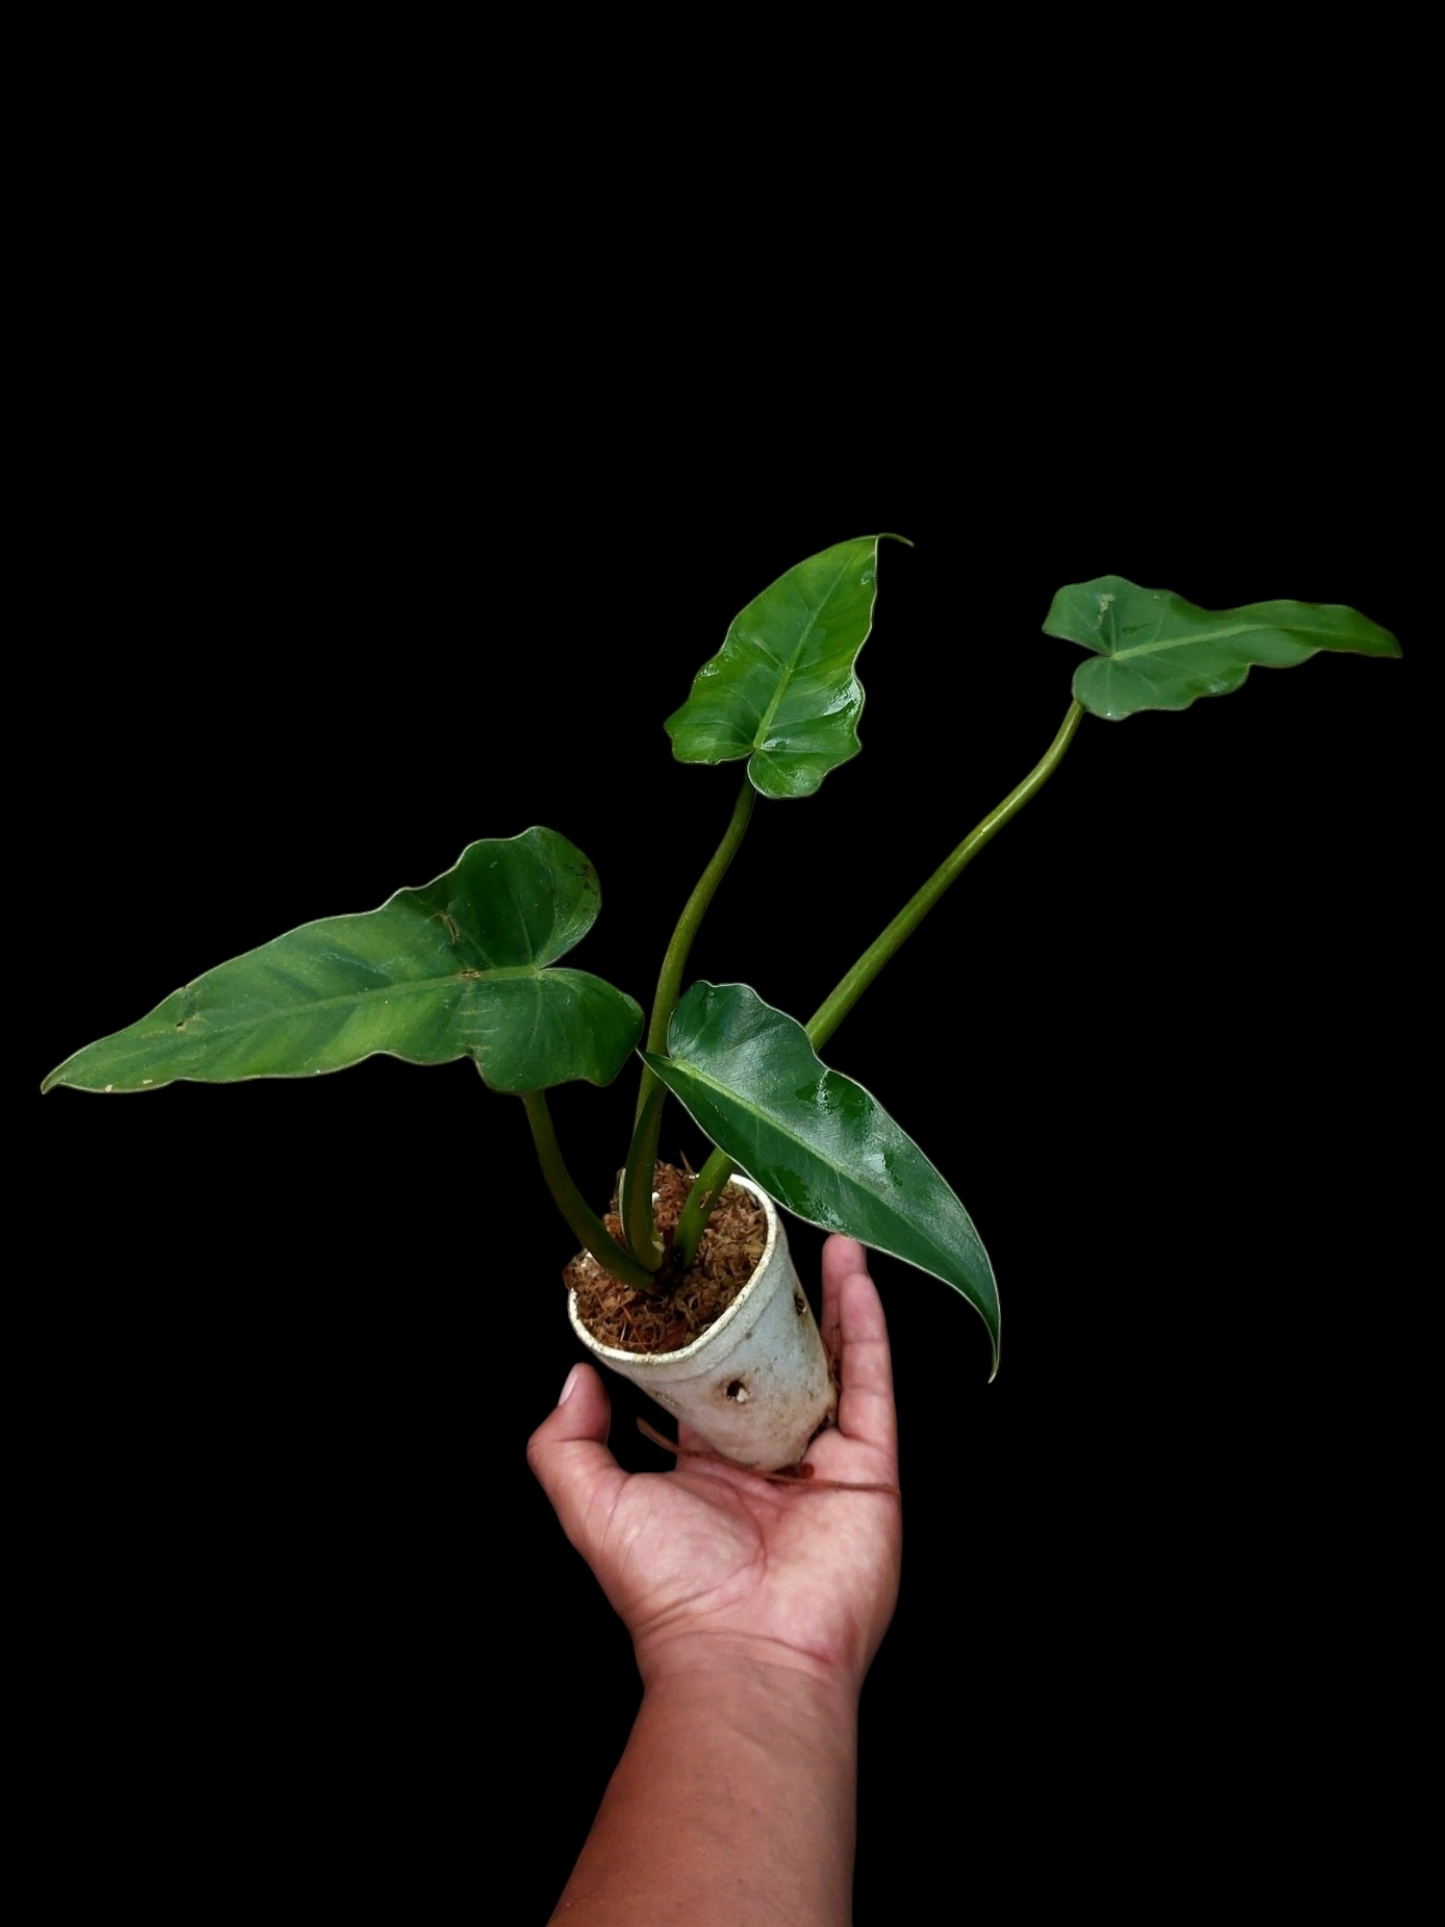 Philodendron sp. "Peruvianum" (EXACT PLANT)